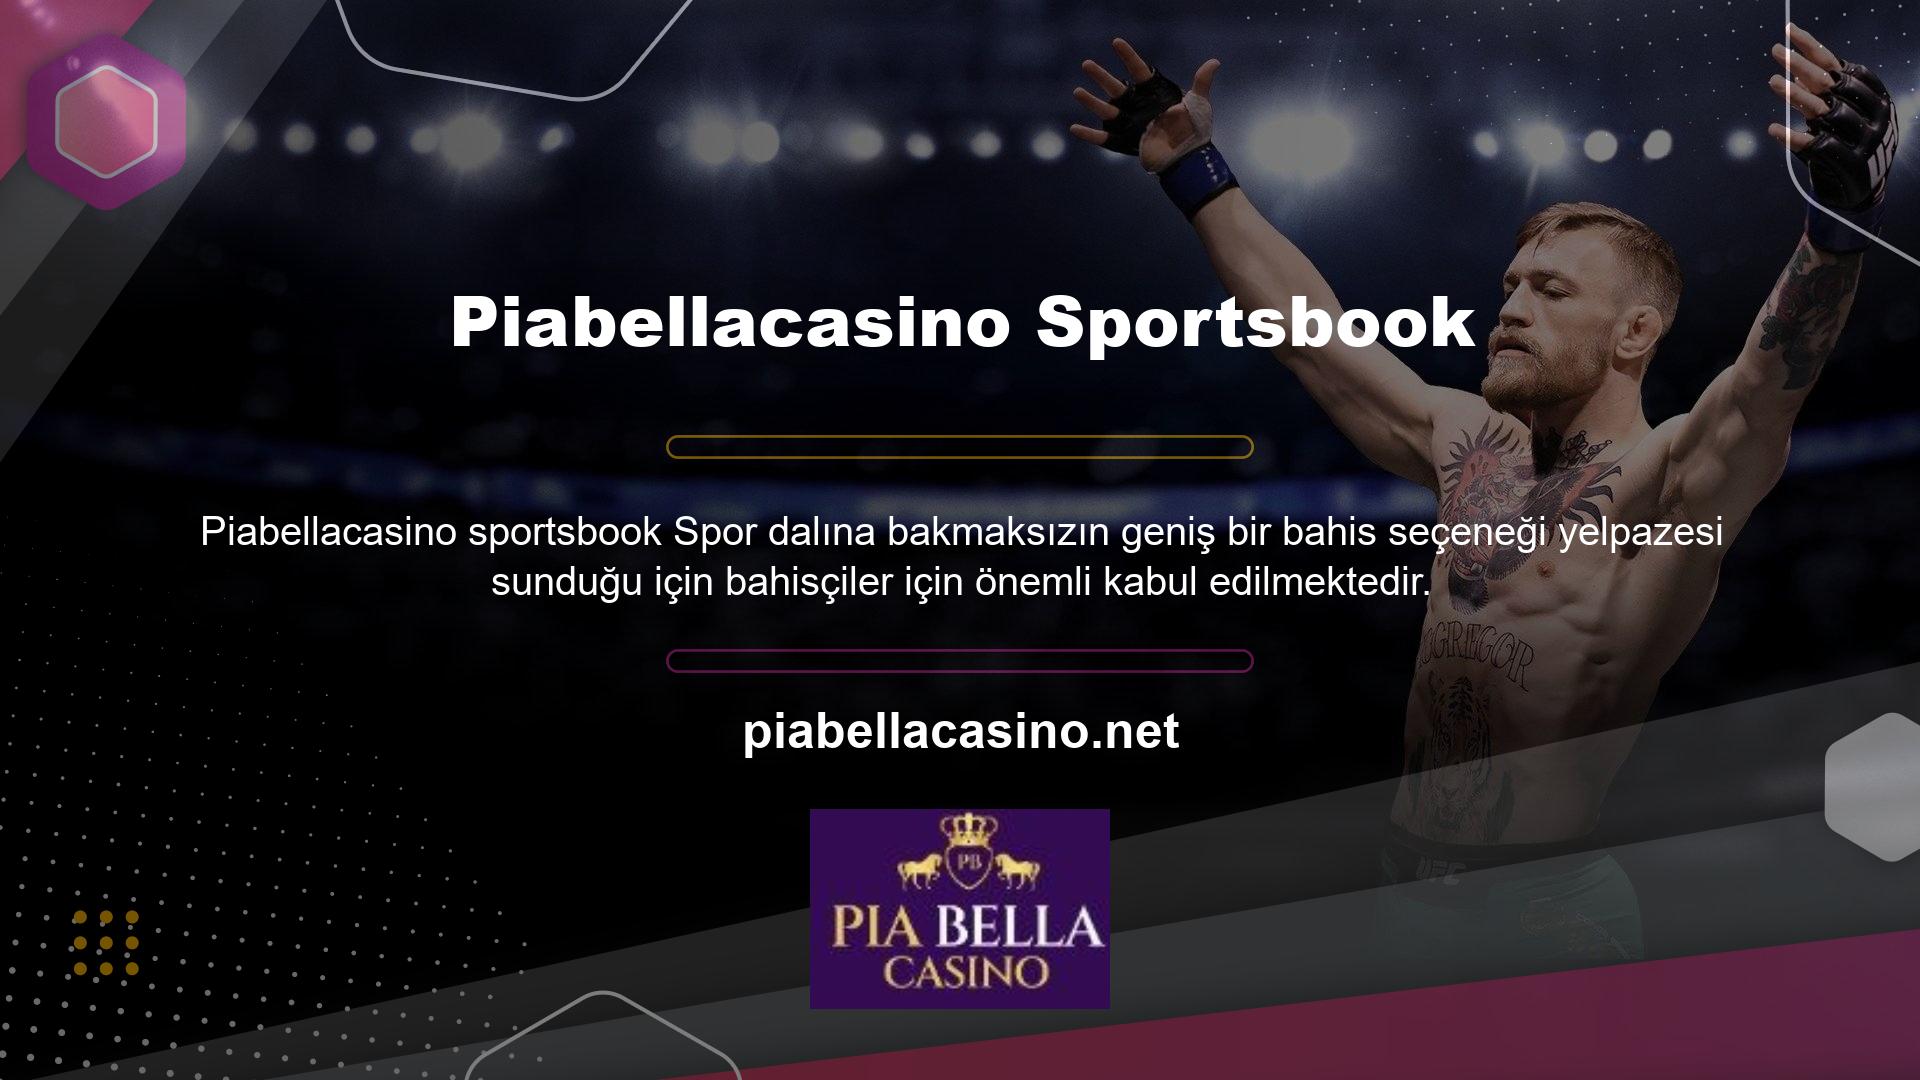 Piabellacasino, en zengin ve en modern spor bahis fırsatlarını sunuyor, bu yüzden her geçen gün daha fazla insan siteye üye oluyor